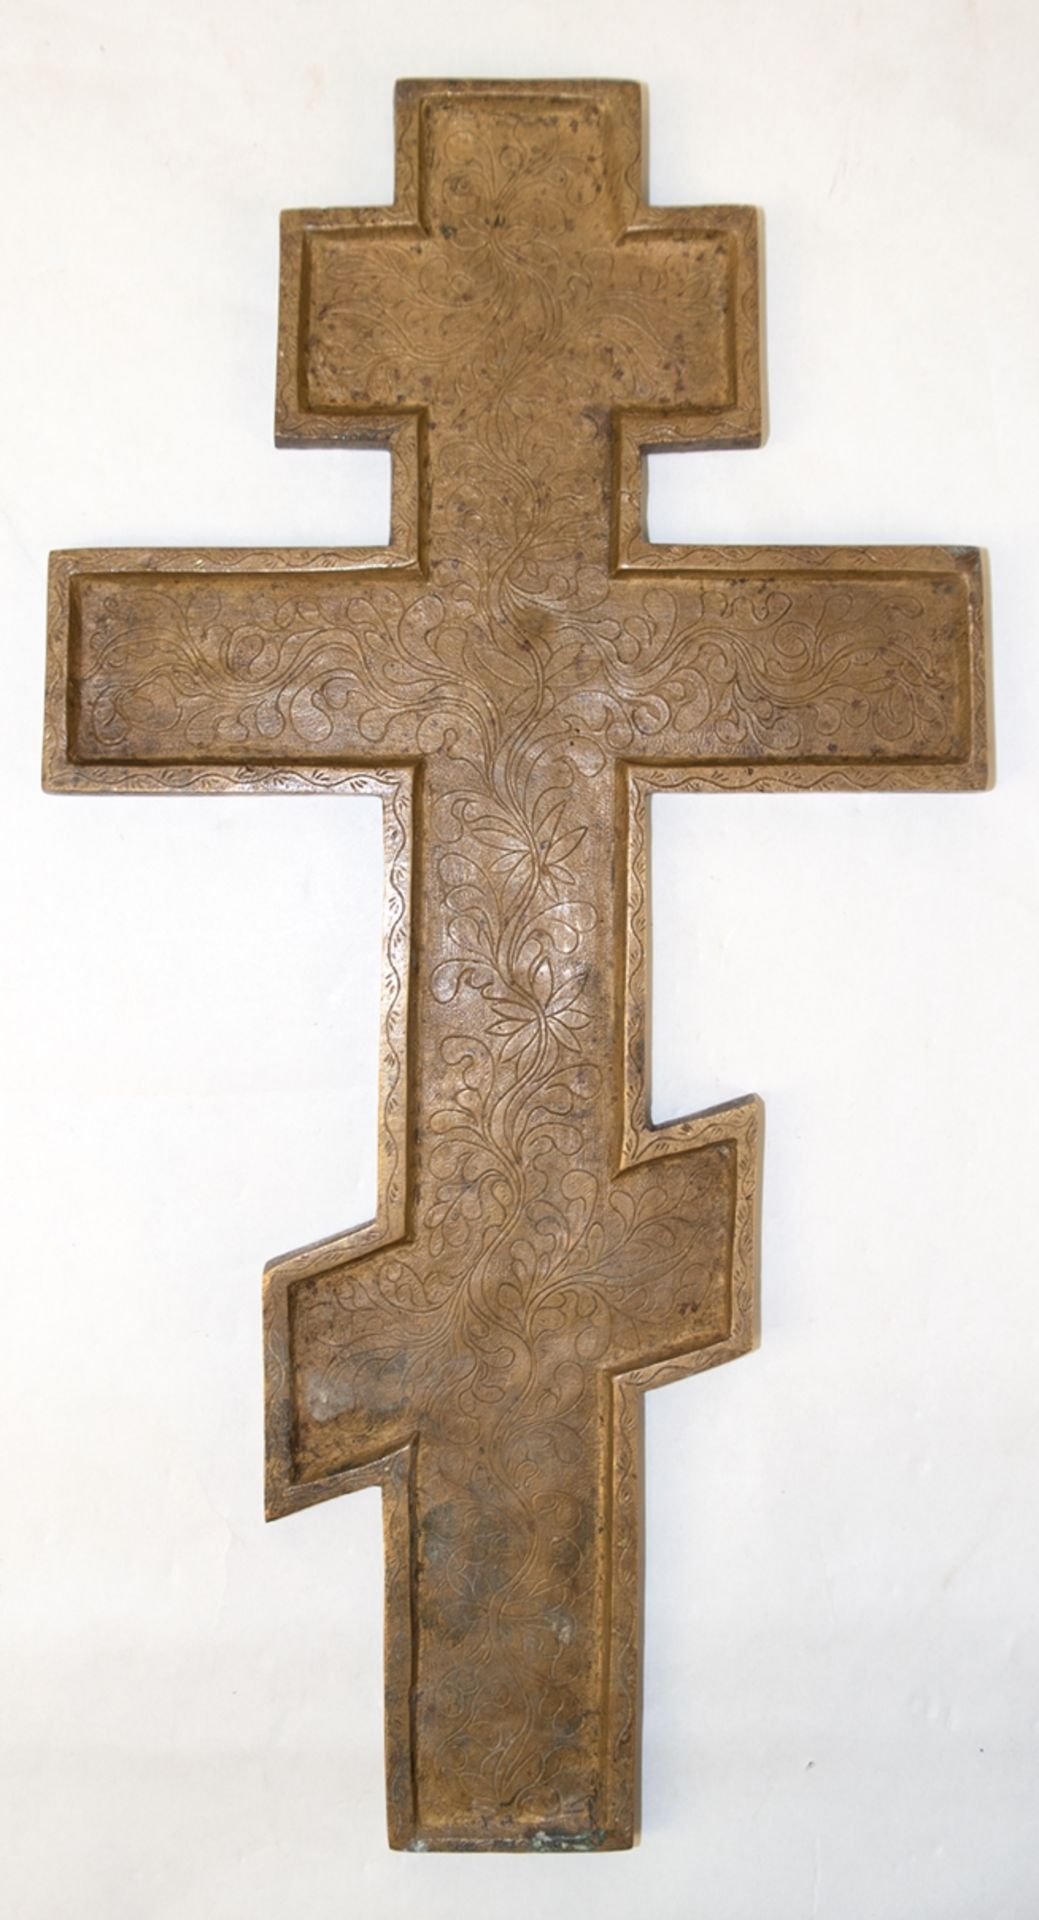 Orthodoxes Kreuz, Messing, reliefiert, 27,5x14 cm - Bild 2 aus 2